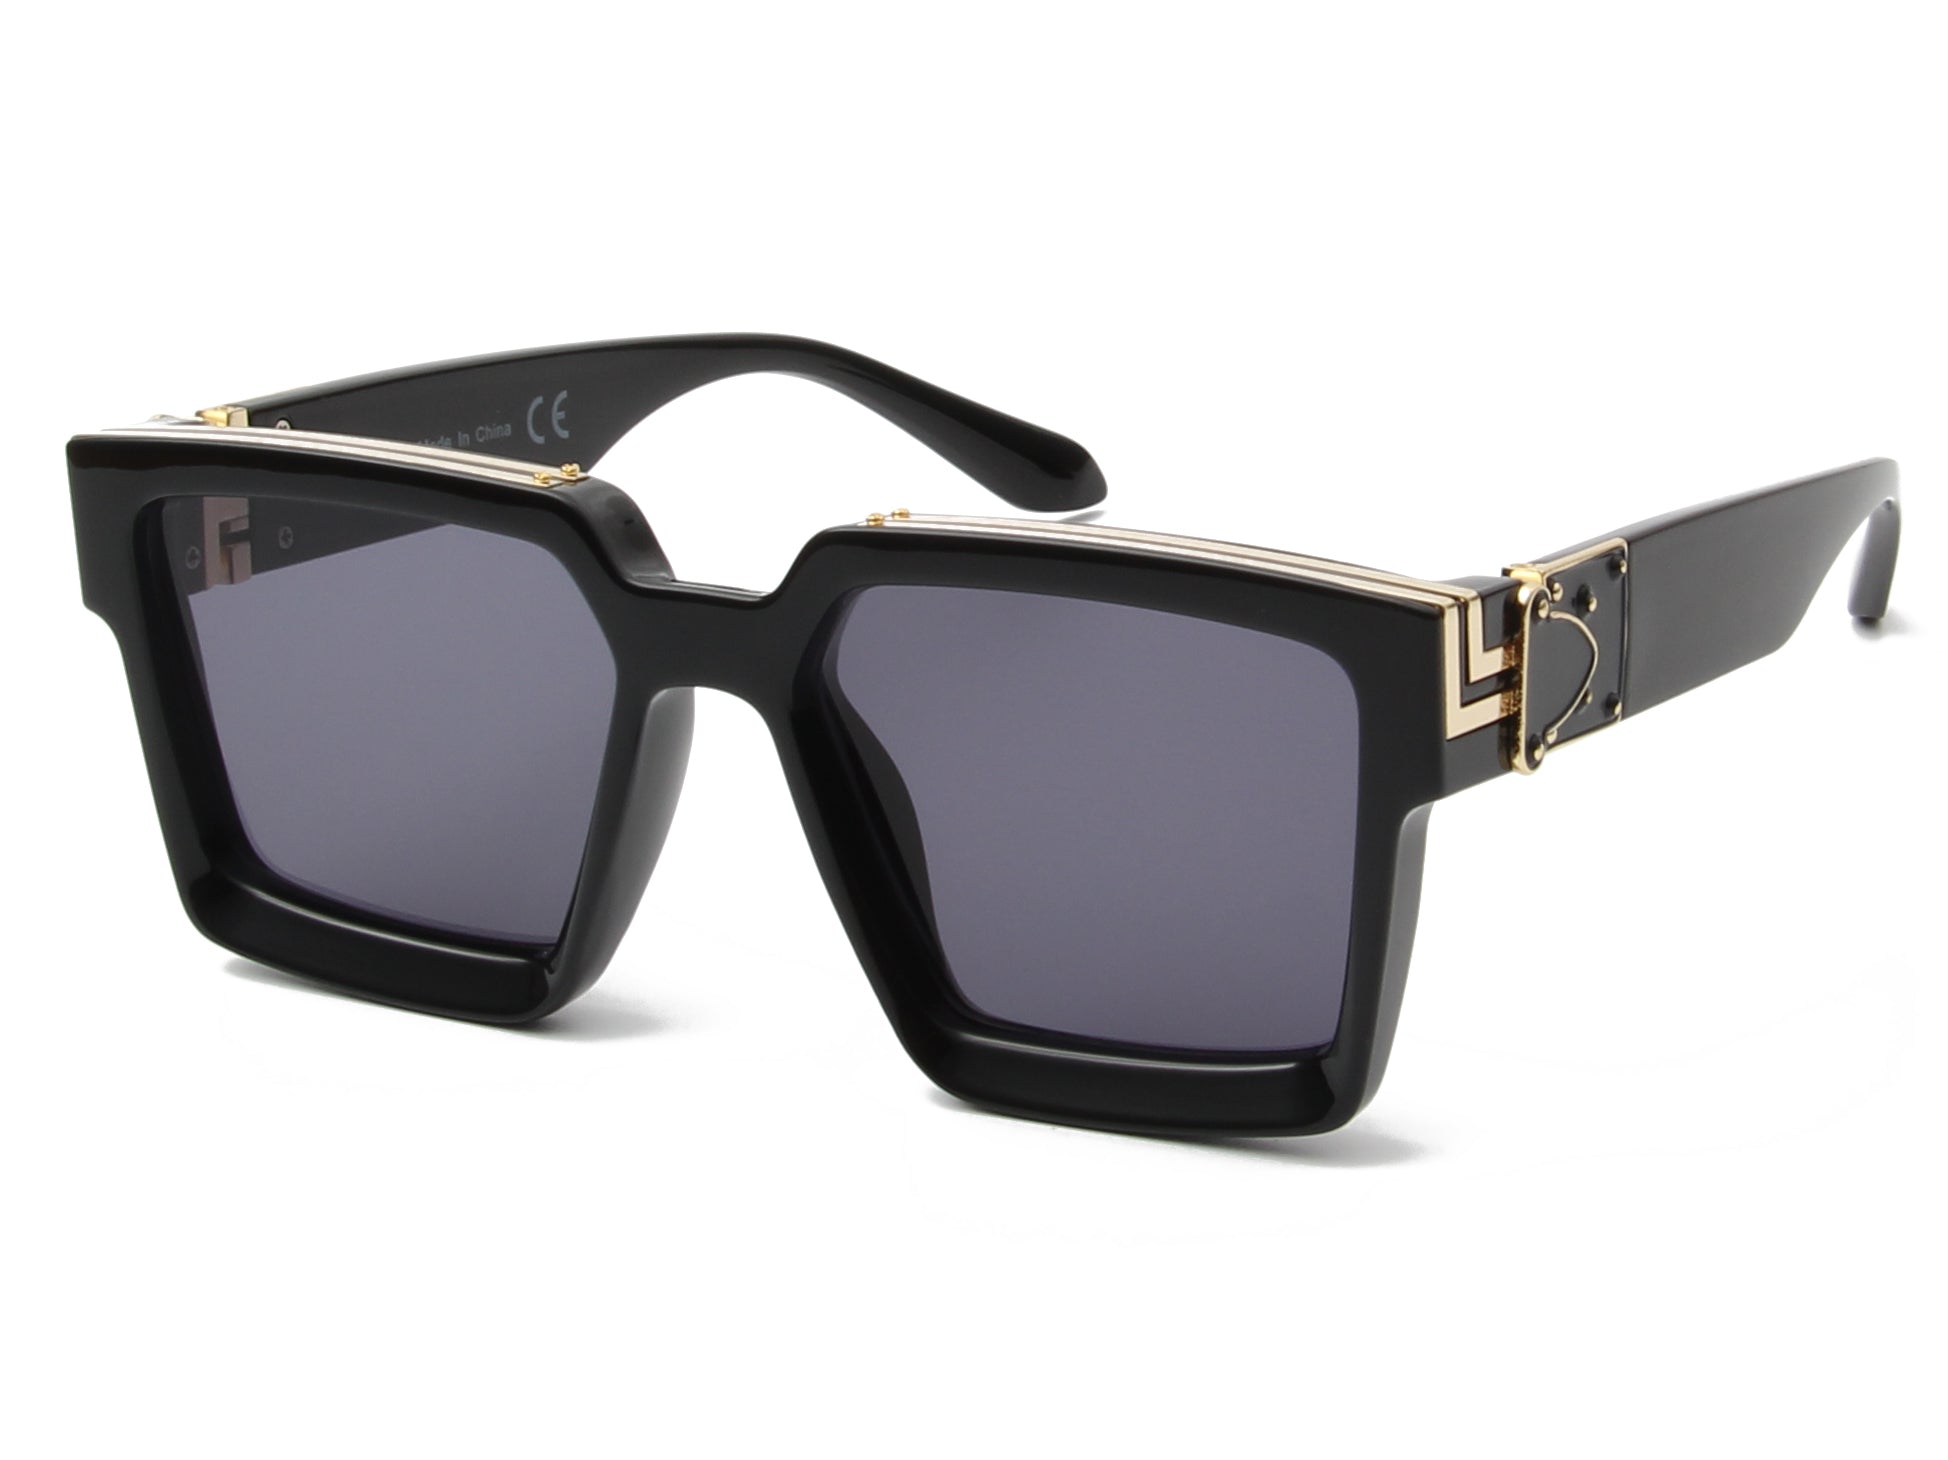 Vintage Square Sunglasses- Black Color – Glam Fete Party